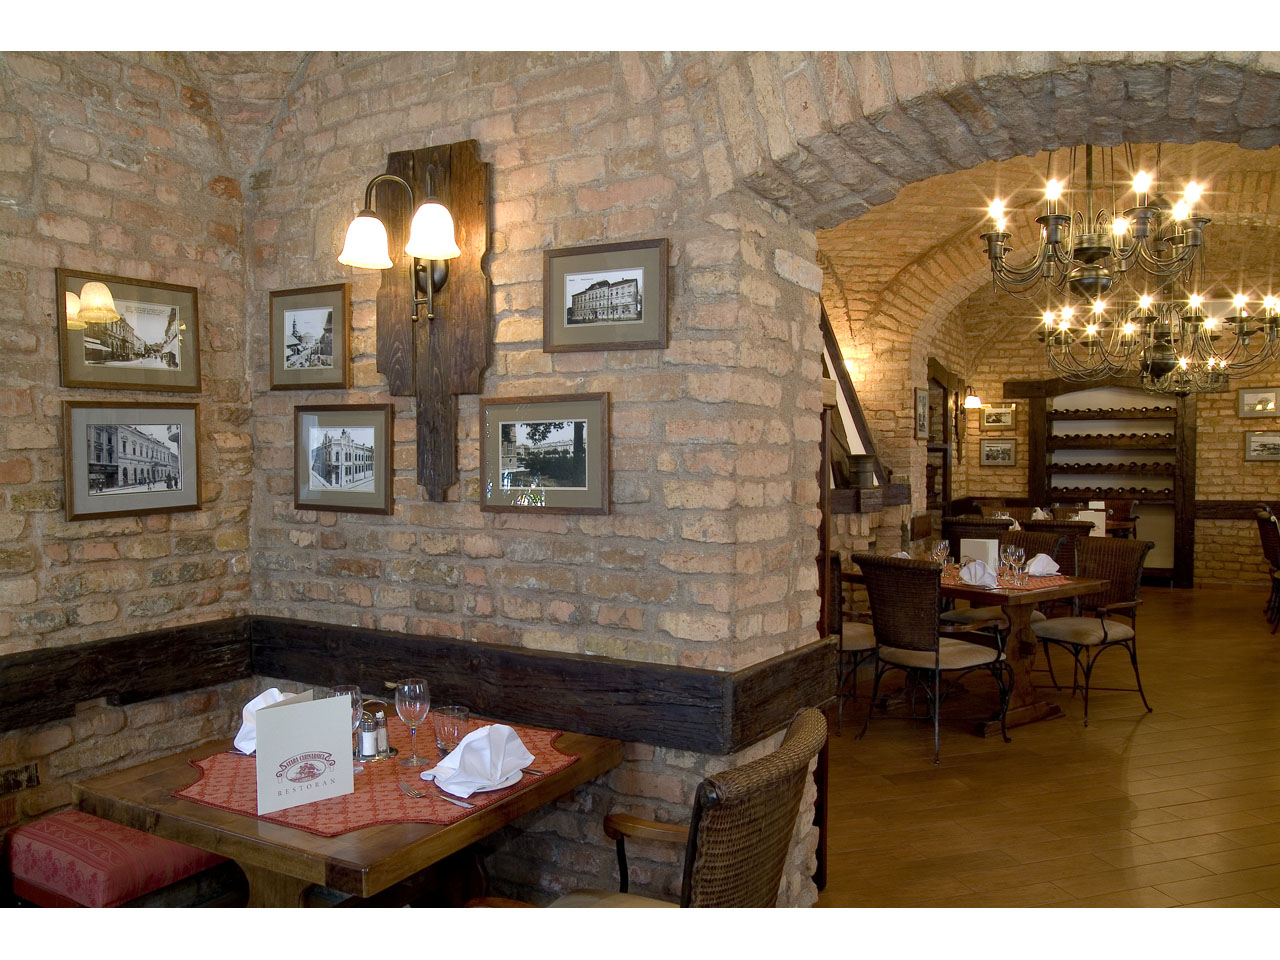 Slika 2 - STARA CARINARNICA Restorani Beograd